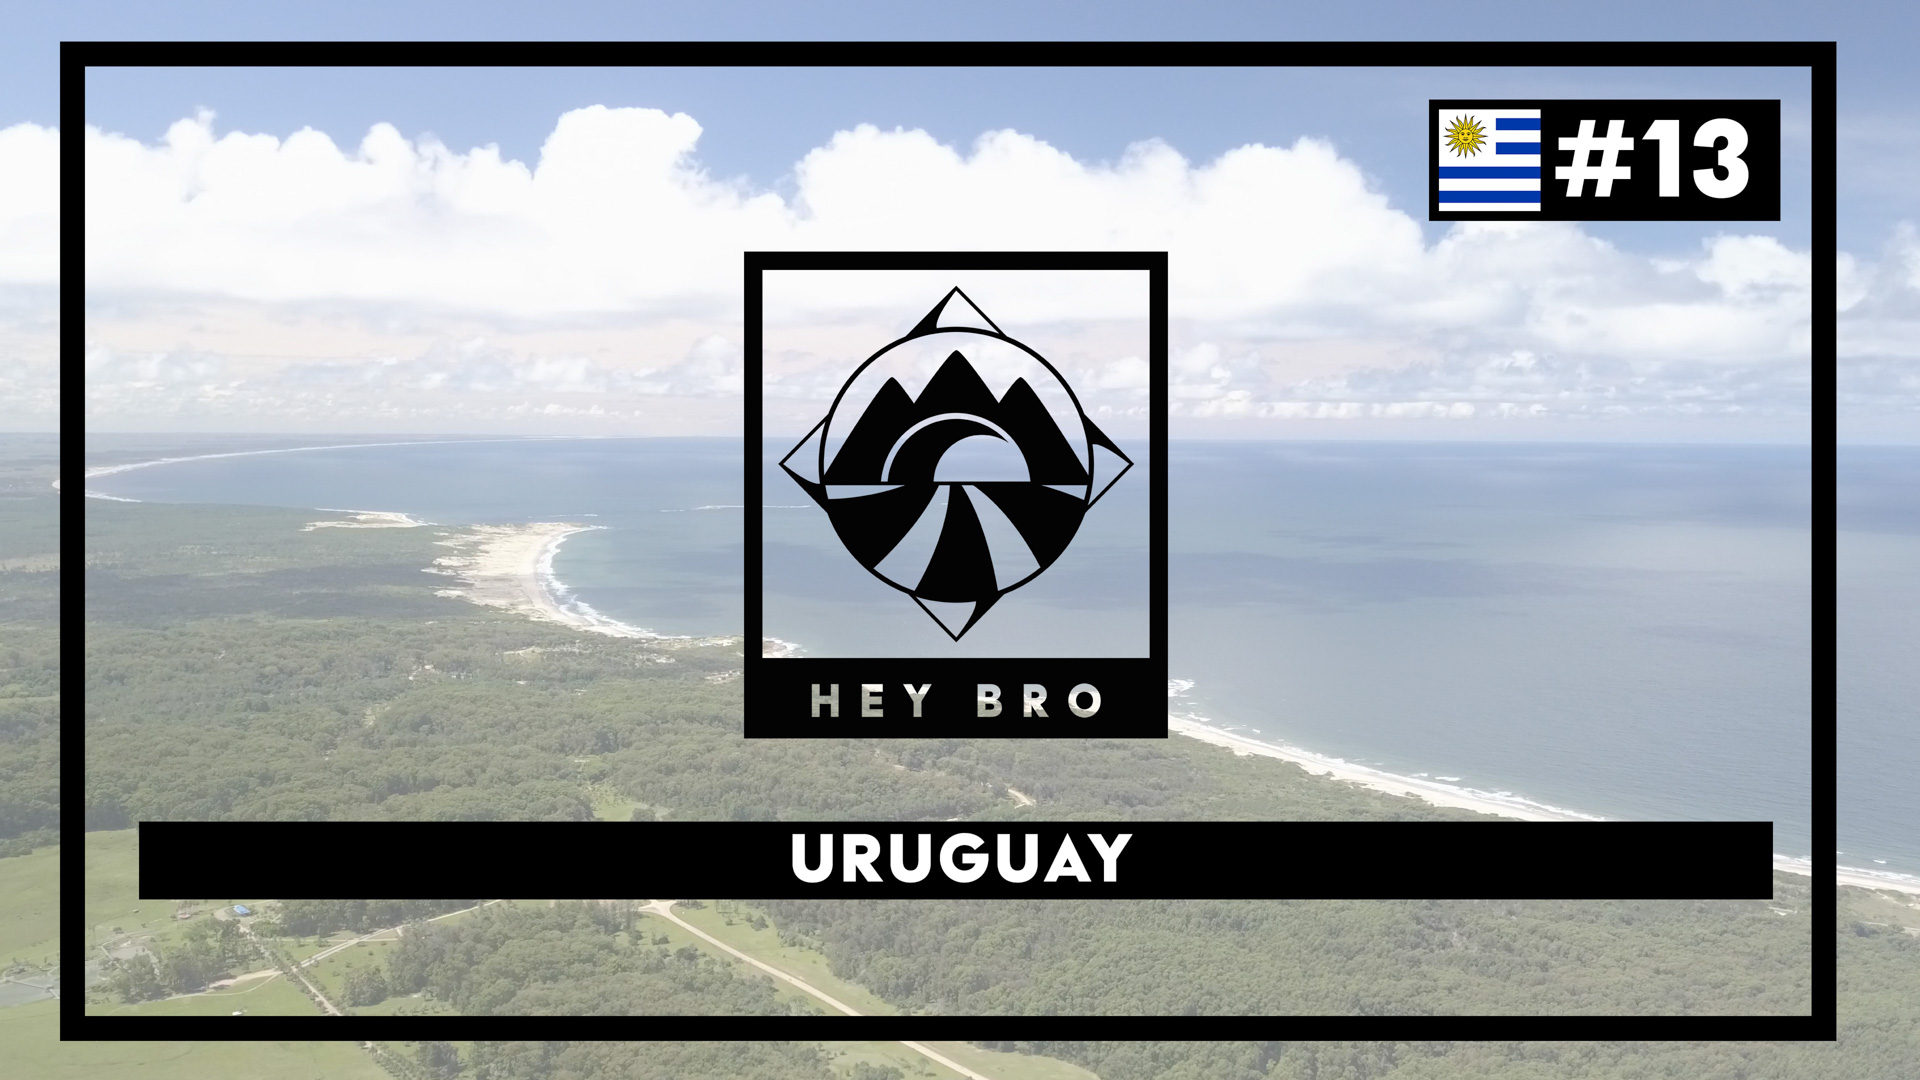 Hey Bro Tour du Monde à vélo épisode 13 l'Uruguay